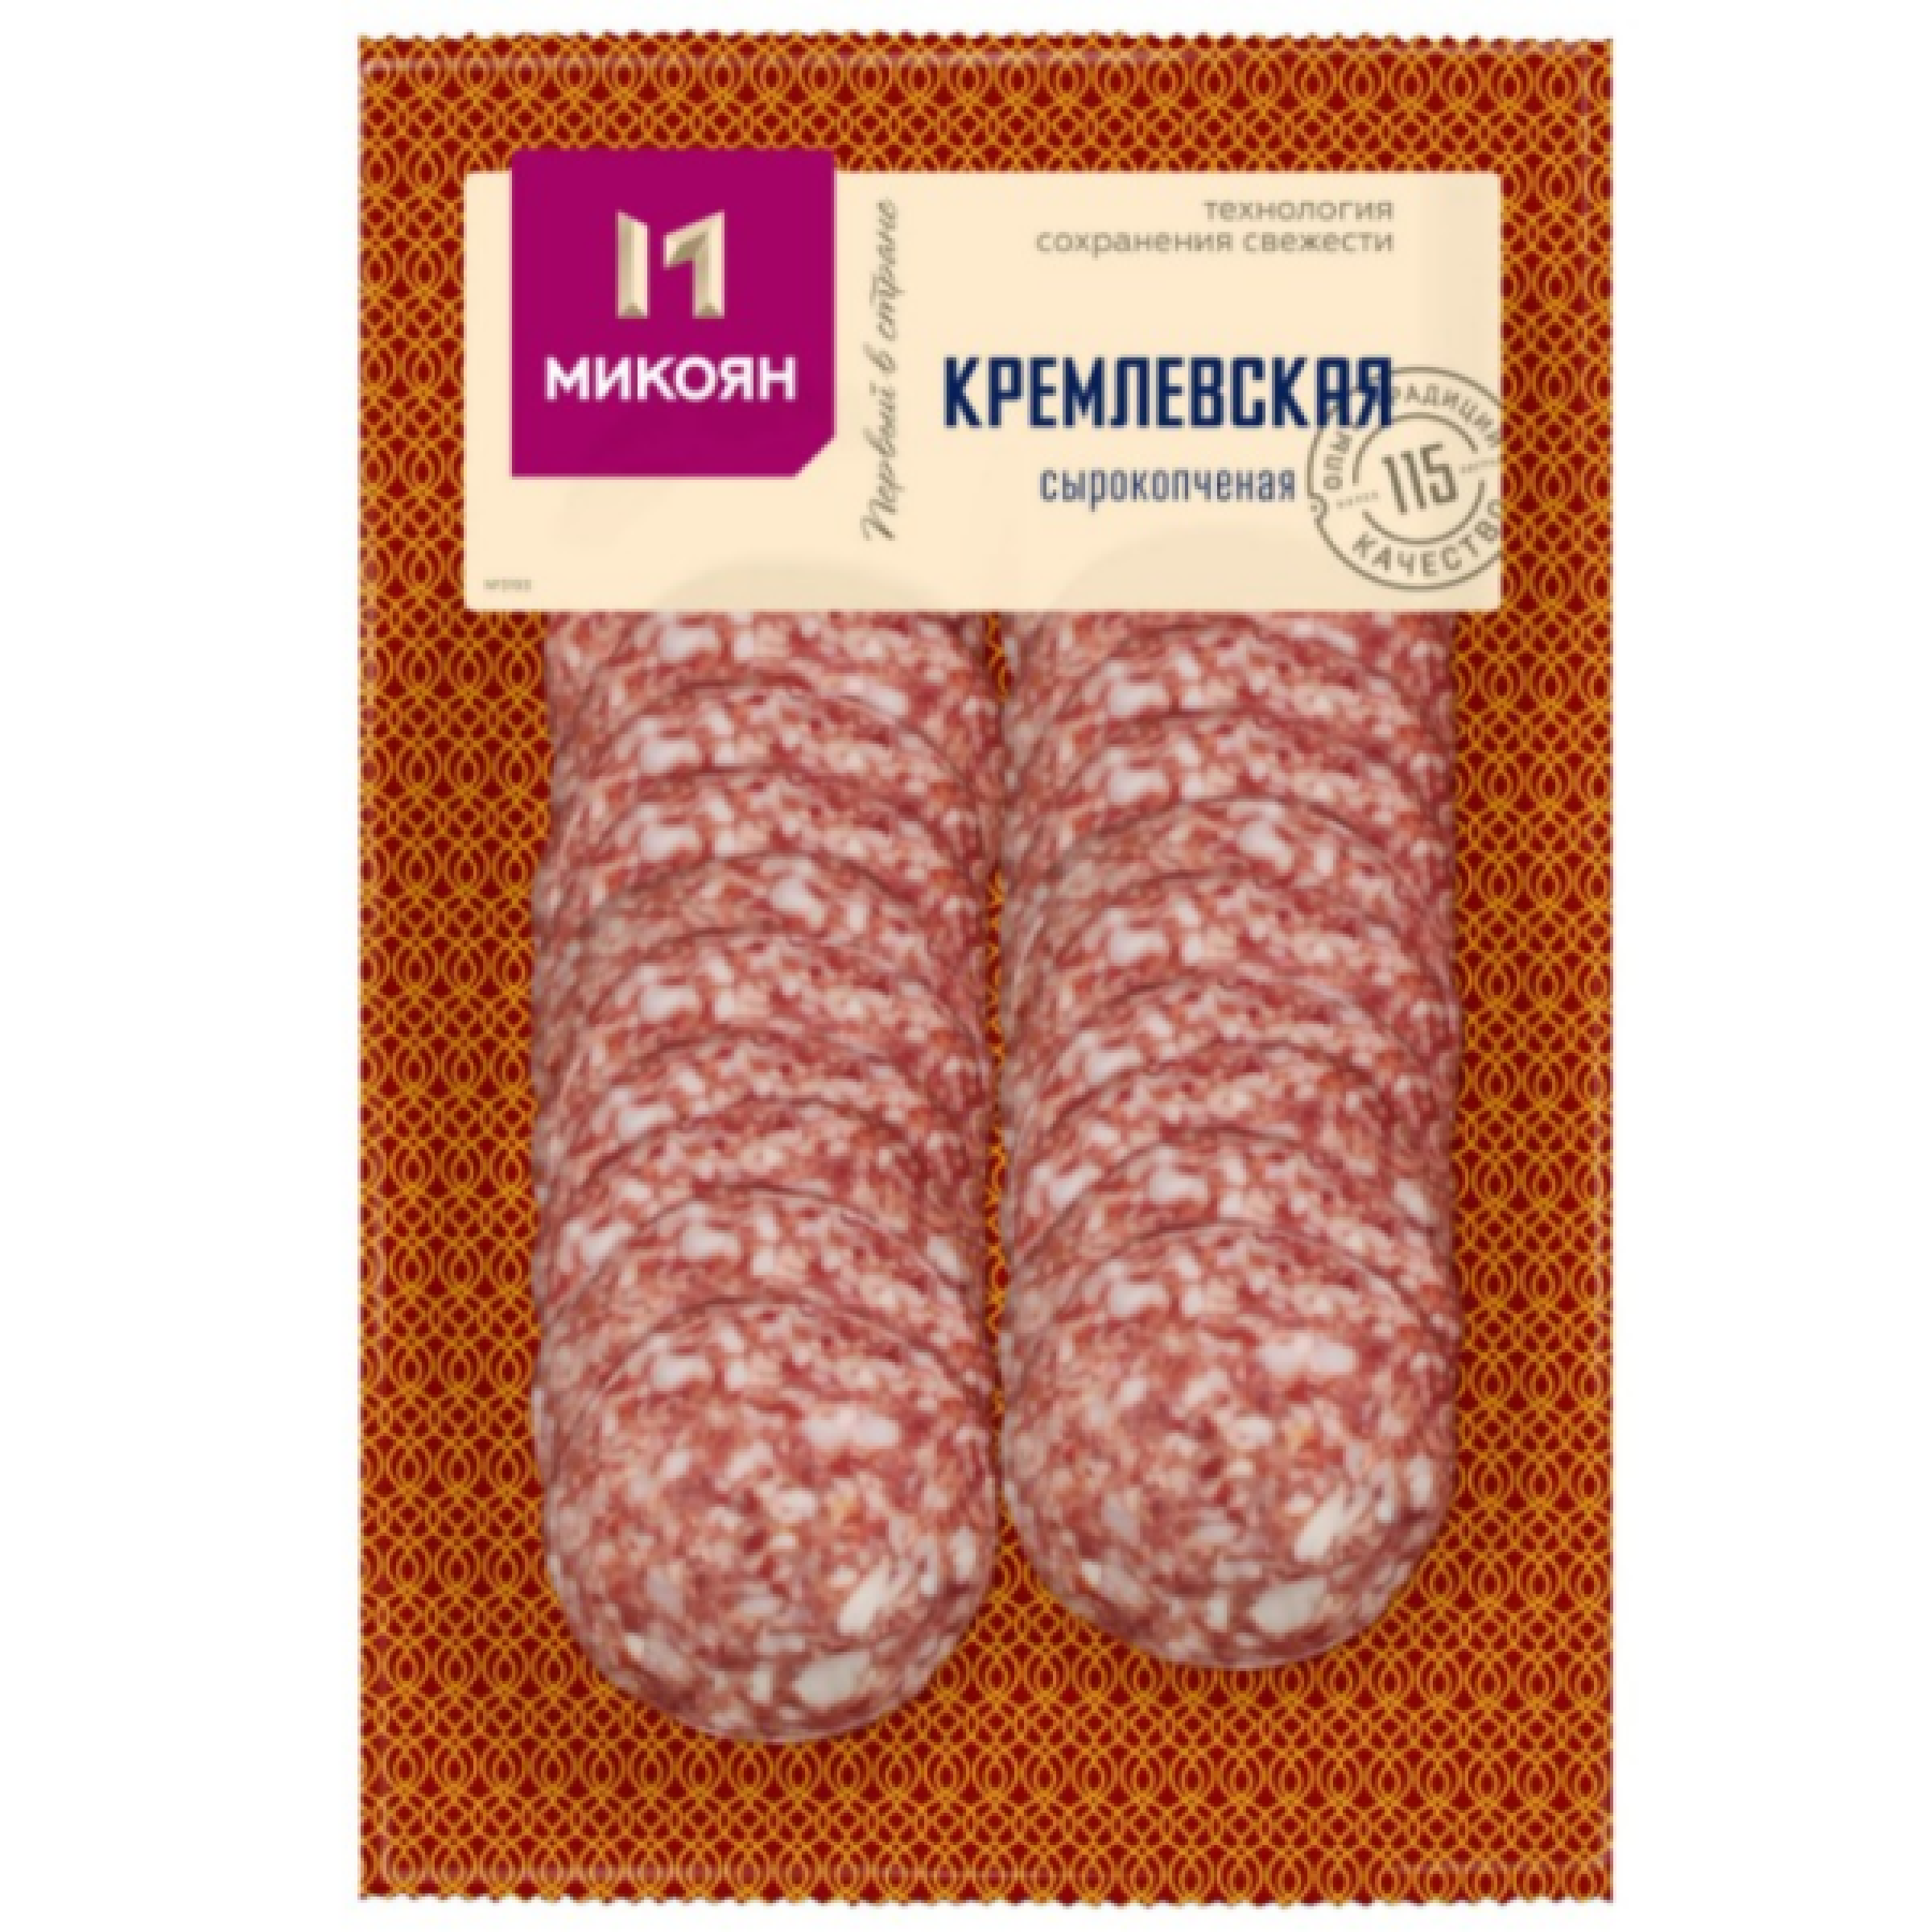 Сырокопченая колбаса Кремлевская Микоян 100 г